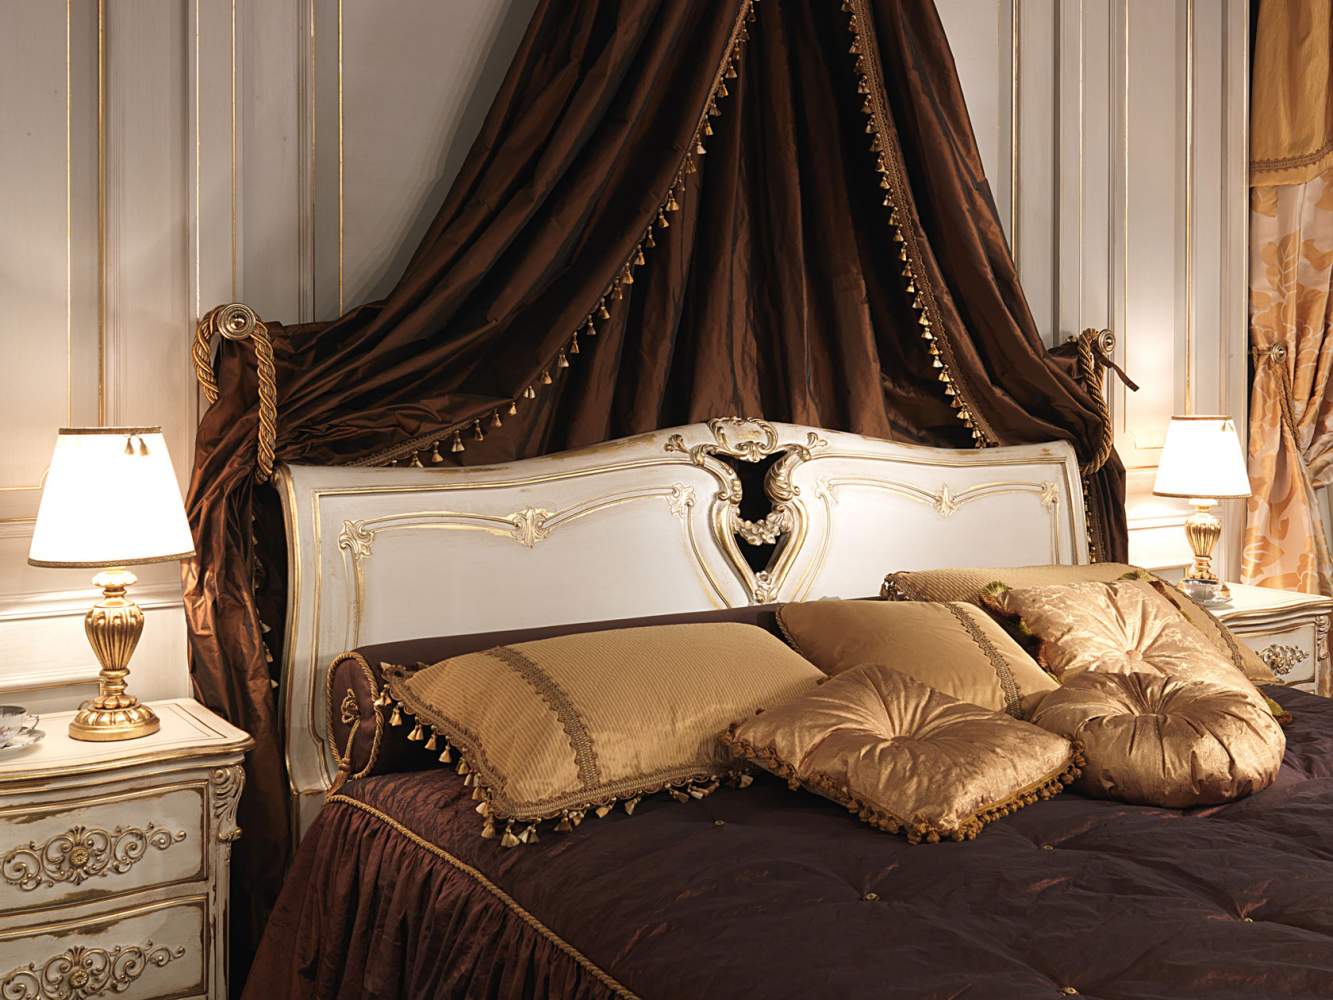 Camera da letto classica in stile Luigi XVI, letto in legno intagliato con baldacchino a parete. comodino intagliato e dorato